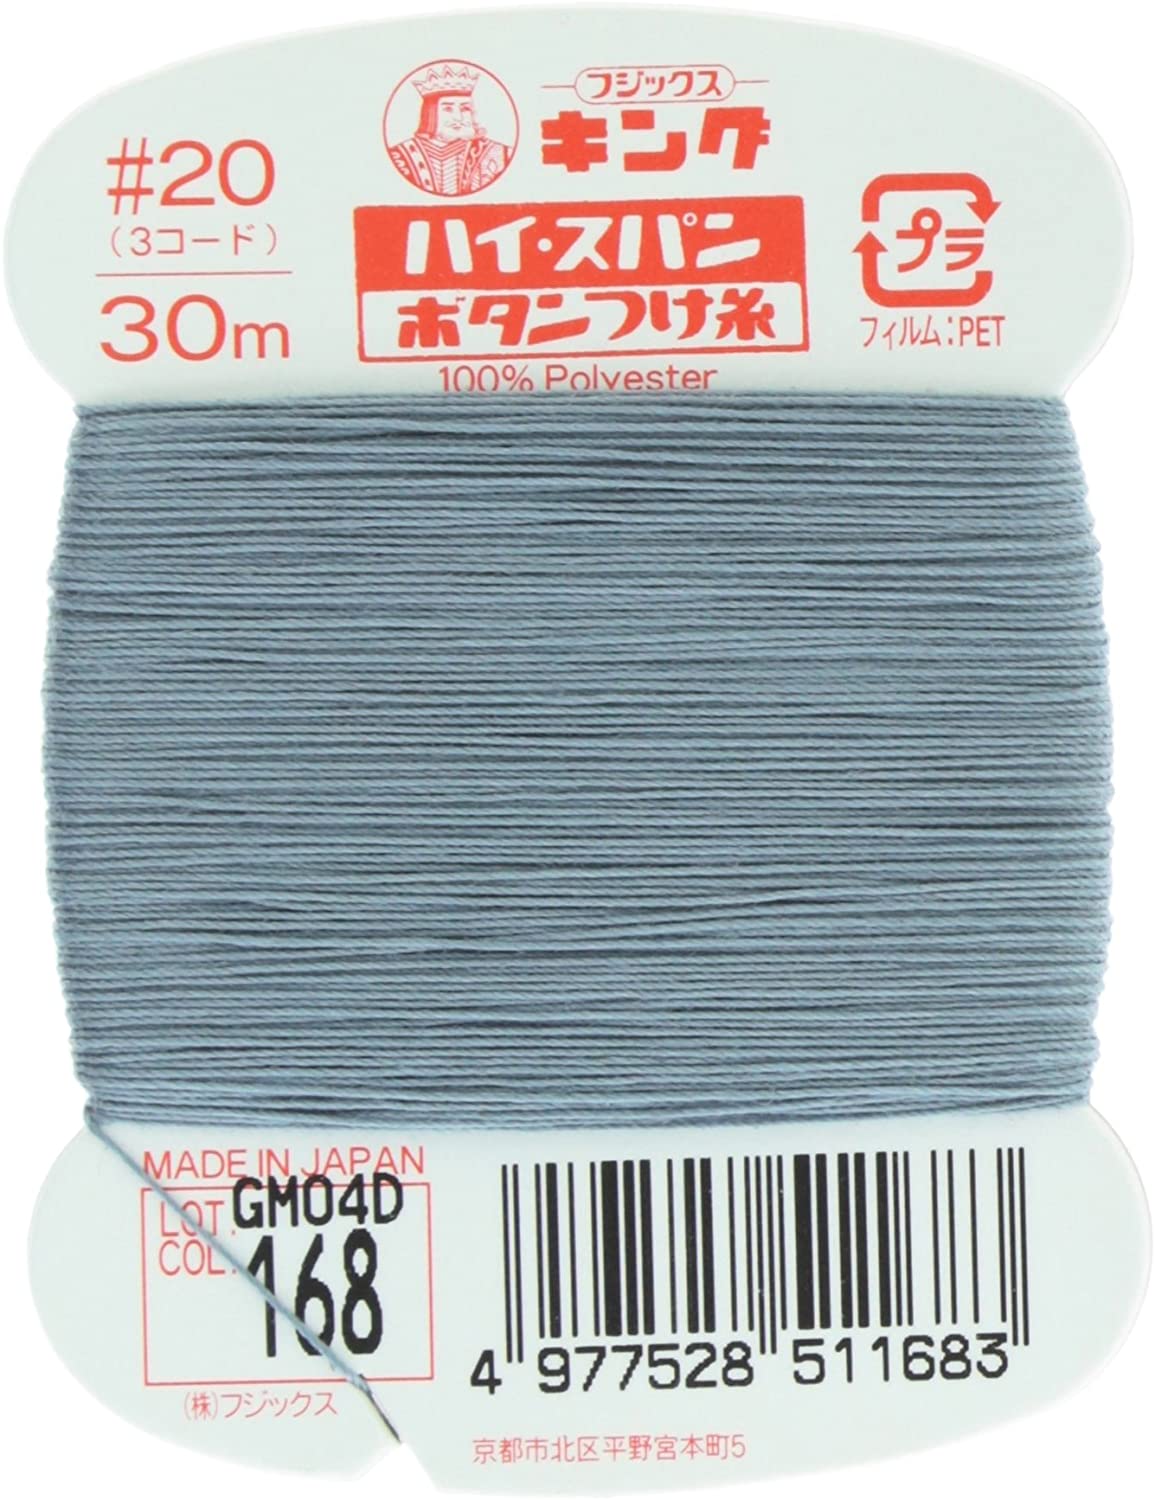 FK51-168 ハイスパンボタンつけ糸 #20 30m巻 (枚)